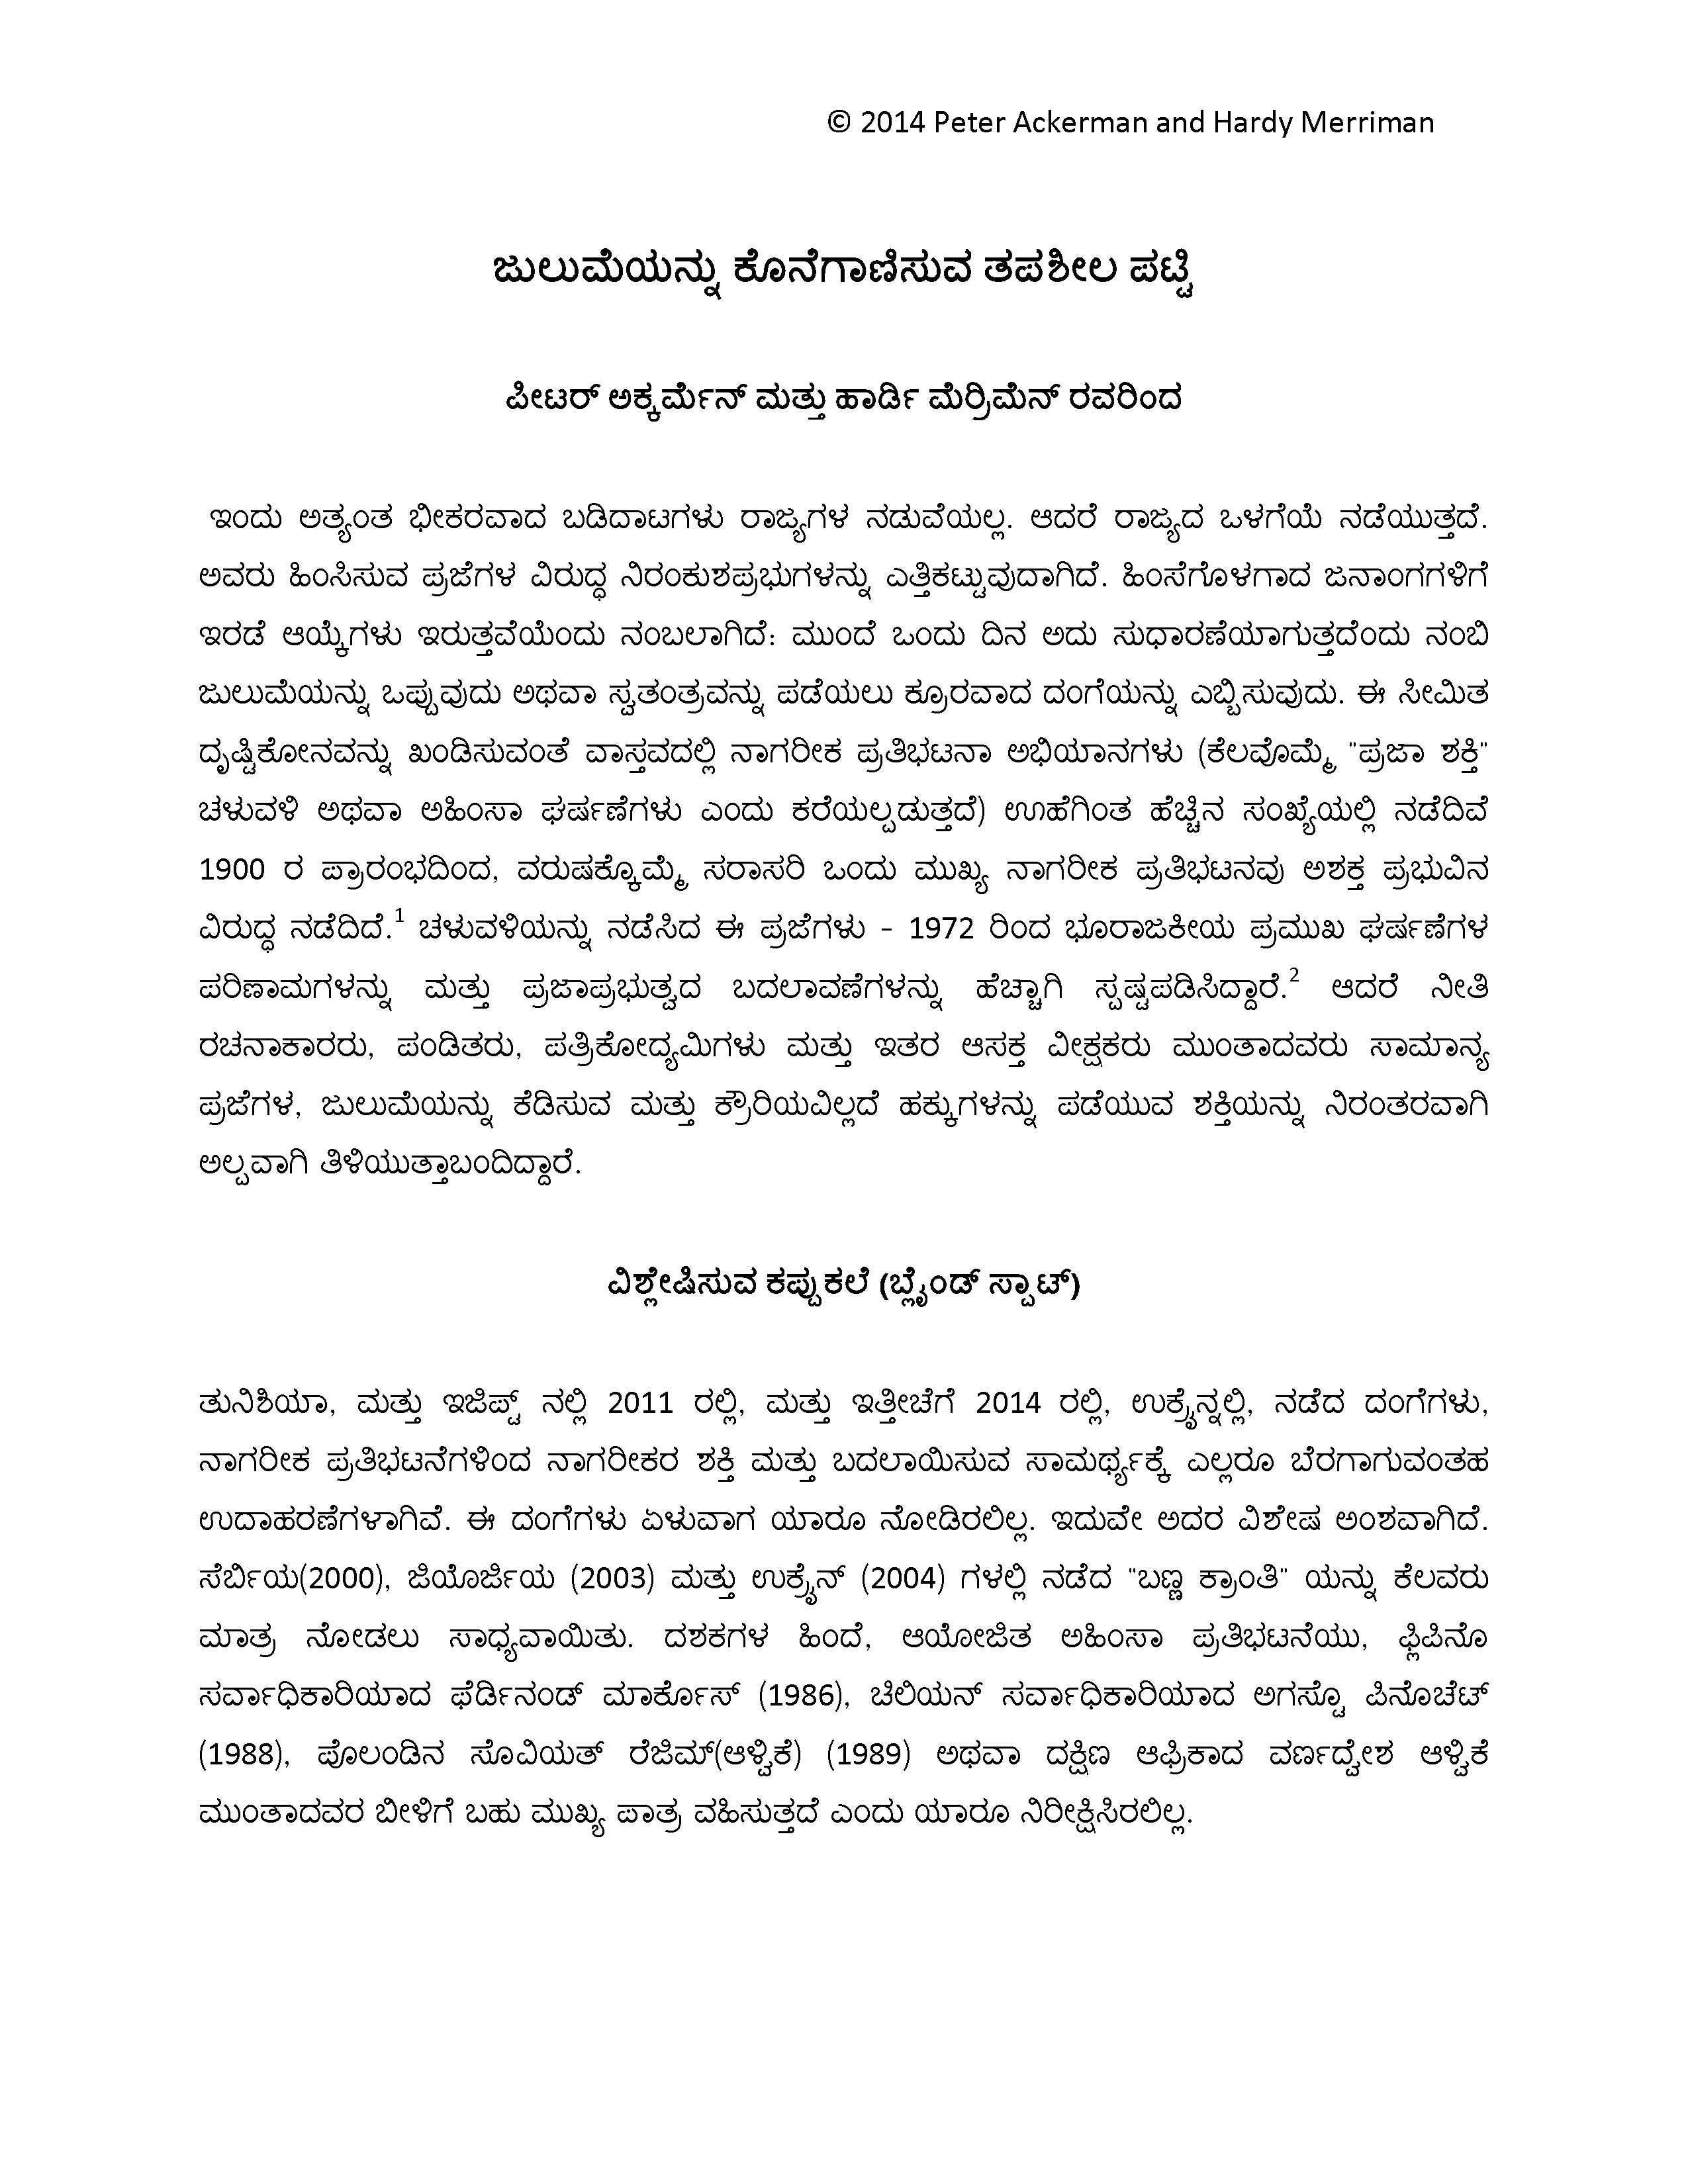 The Checklist for Ending Tyranny (Kannada)